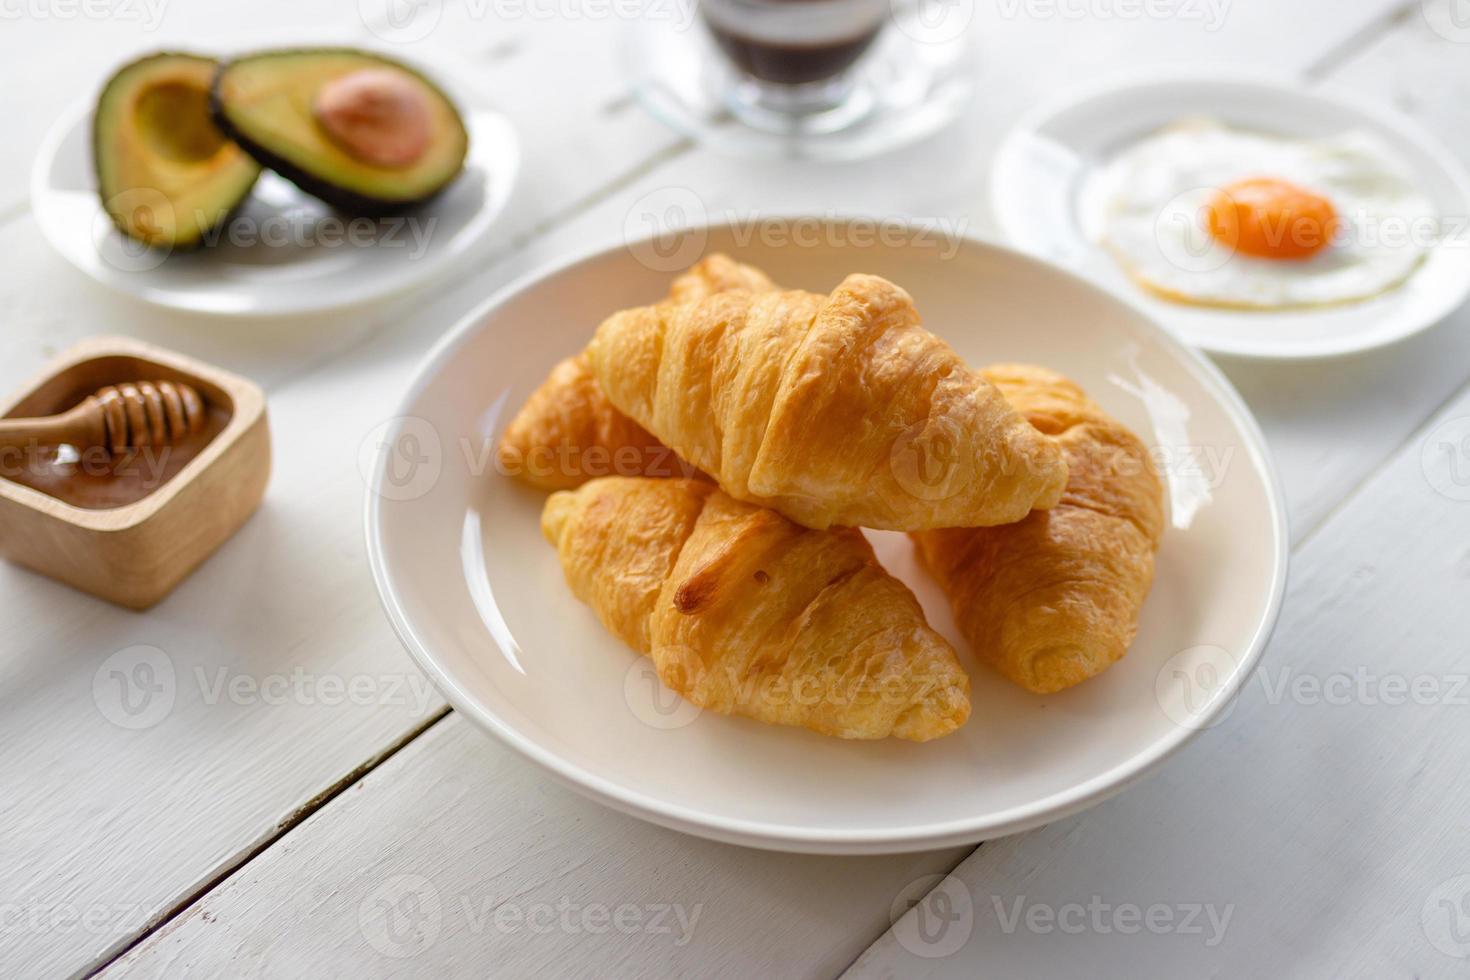 Sándwich de croissant con huevo, aguacate en manjar blanco y miel, café.  concepto de desayuno y comida saludable. 17657839 Foto de stock en Vecteezy